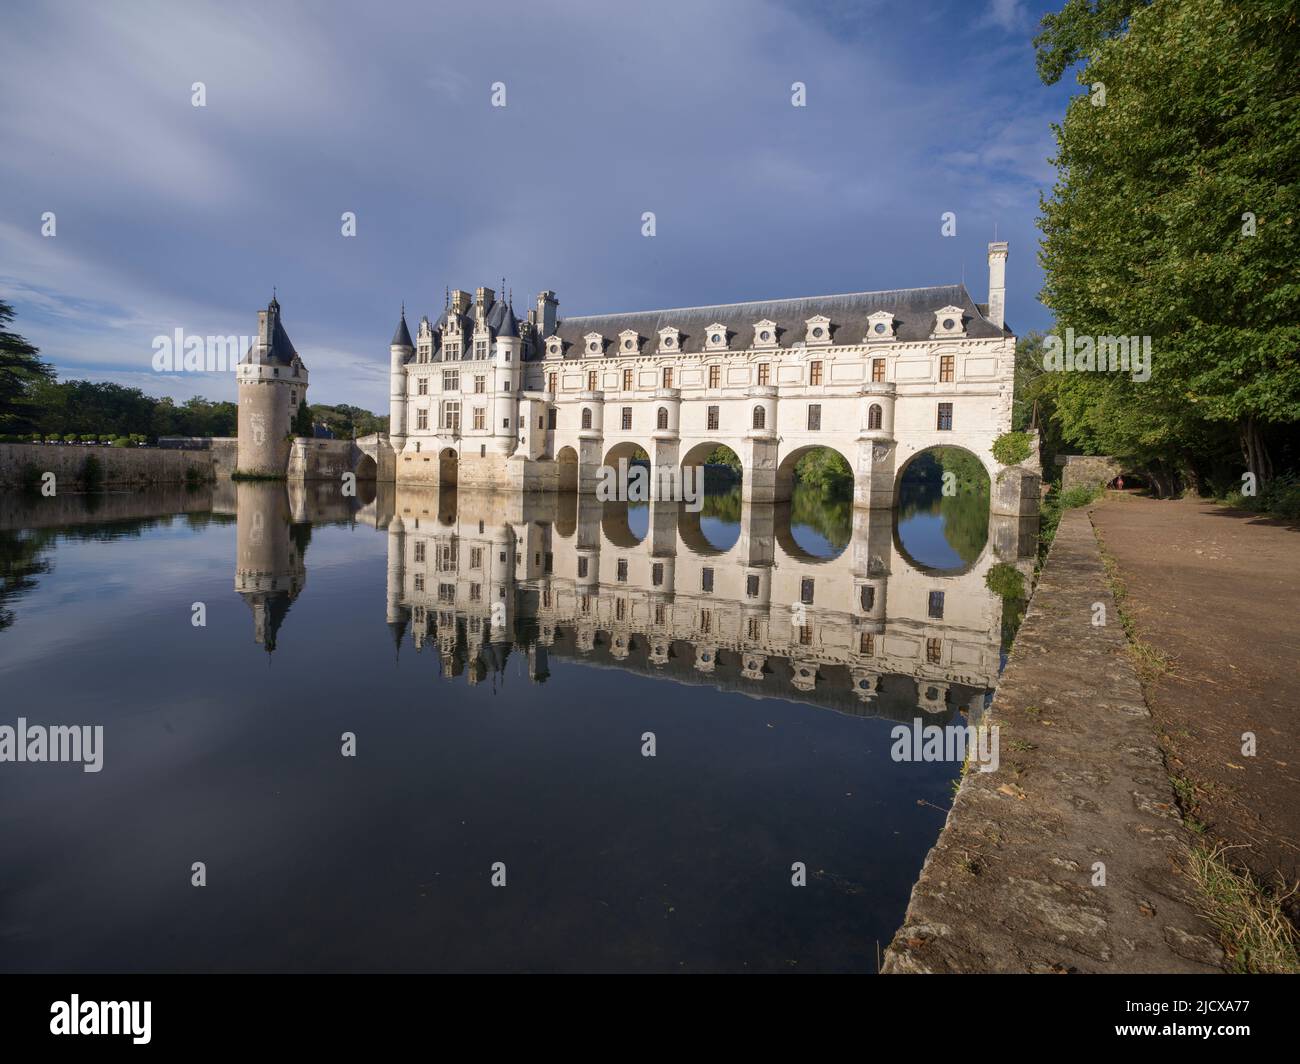 Château de Chenonceau, site classé au patrimoine mondial de l'UNESCO, Chenonceau, Indre-et-Loire, Centre-Val de Loire, France, Europe Banque D'Images